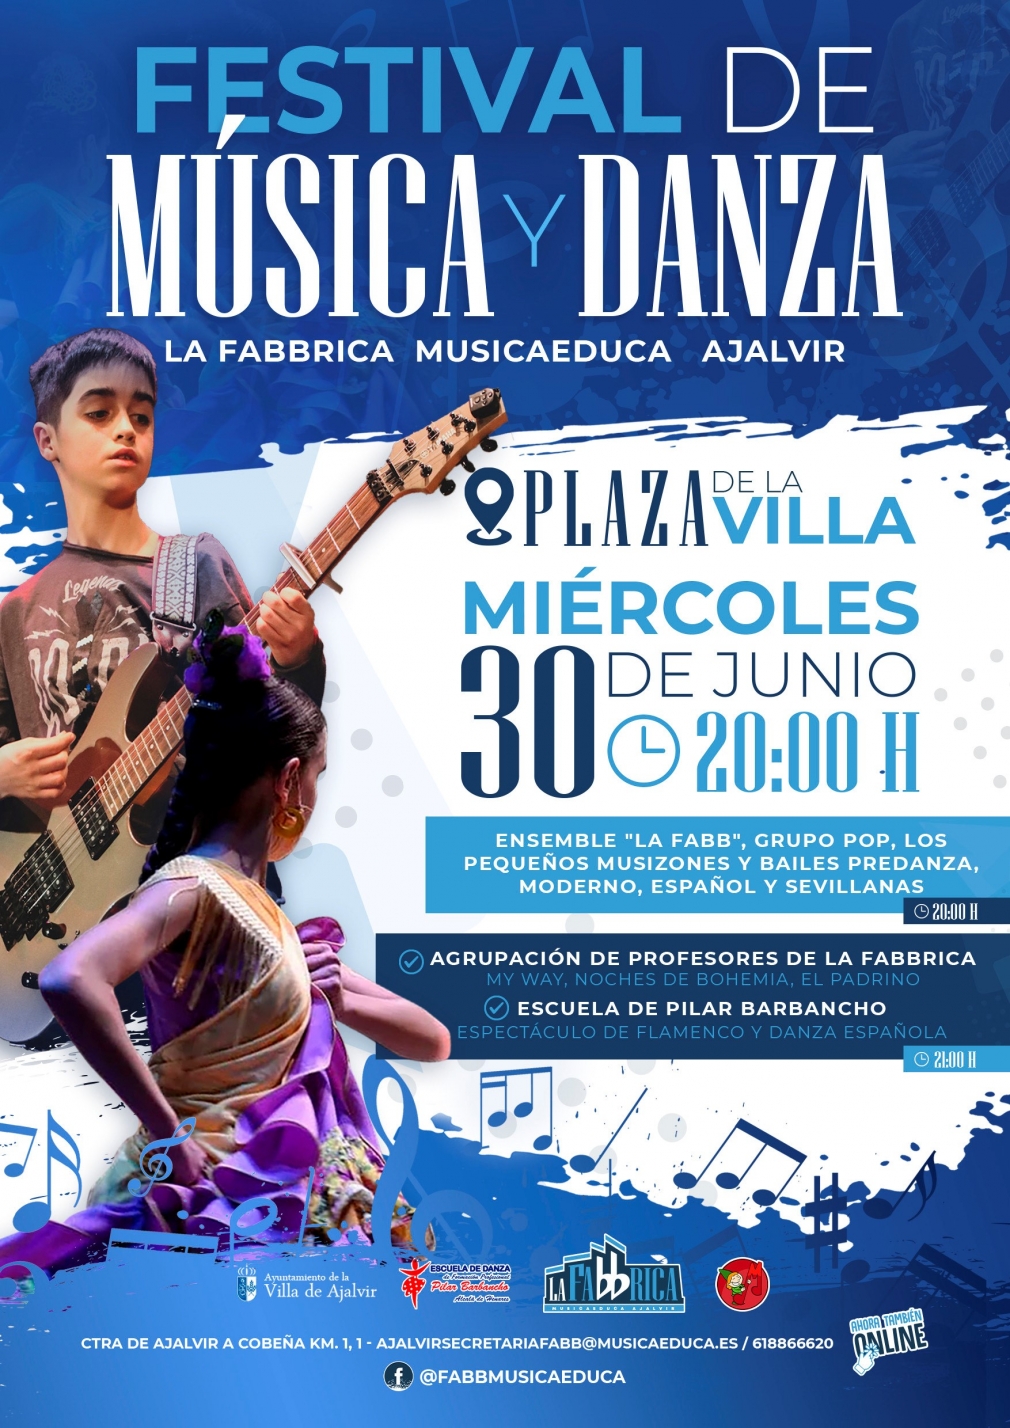 FESTIVAL DE MUSICA Y DANZA